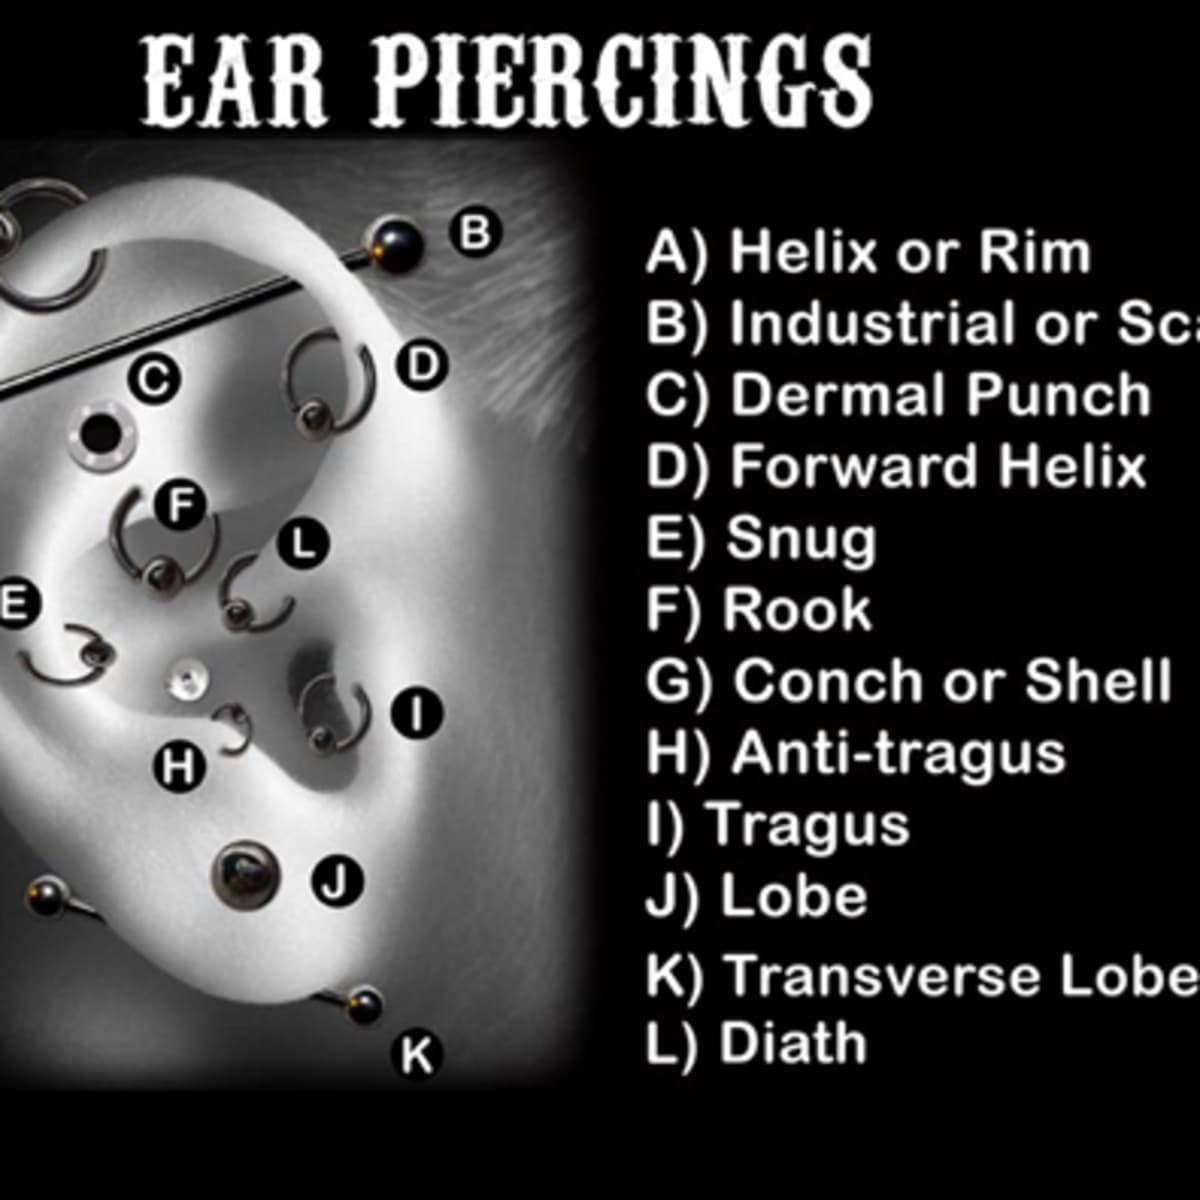 dermal punch ear piercing